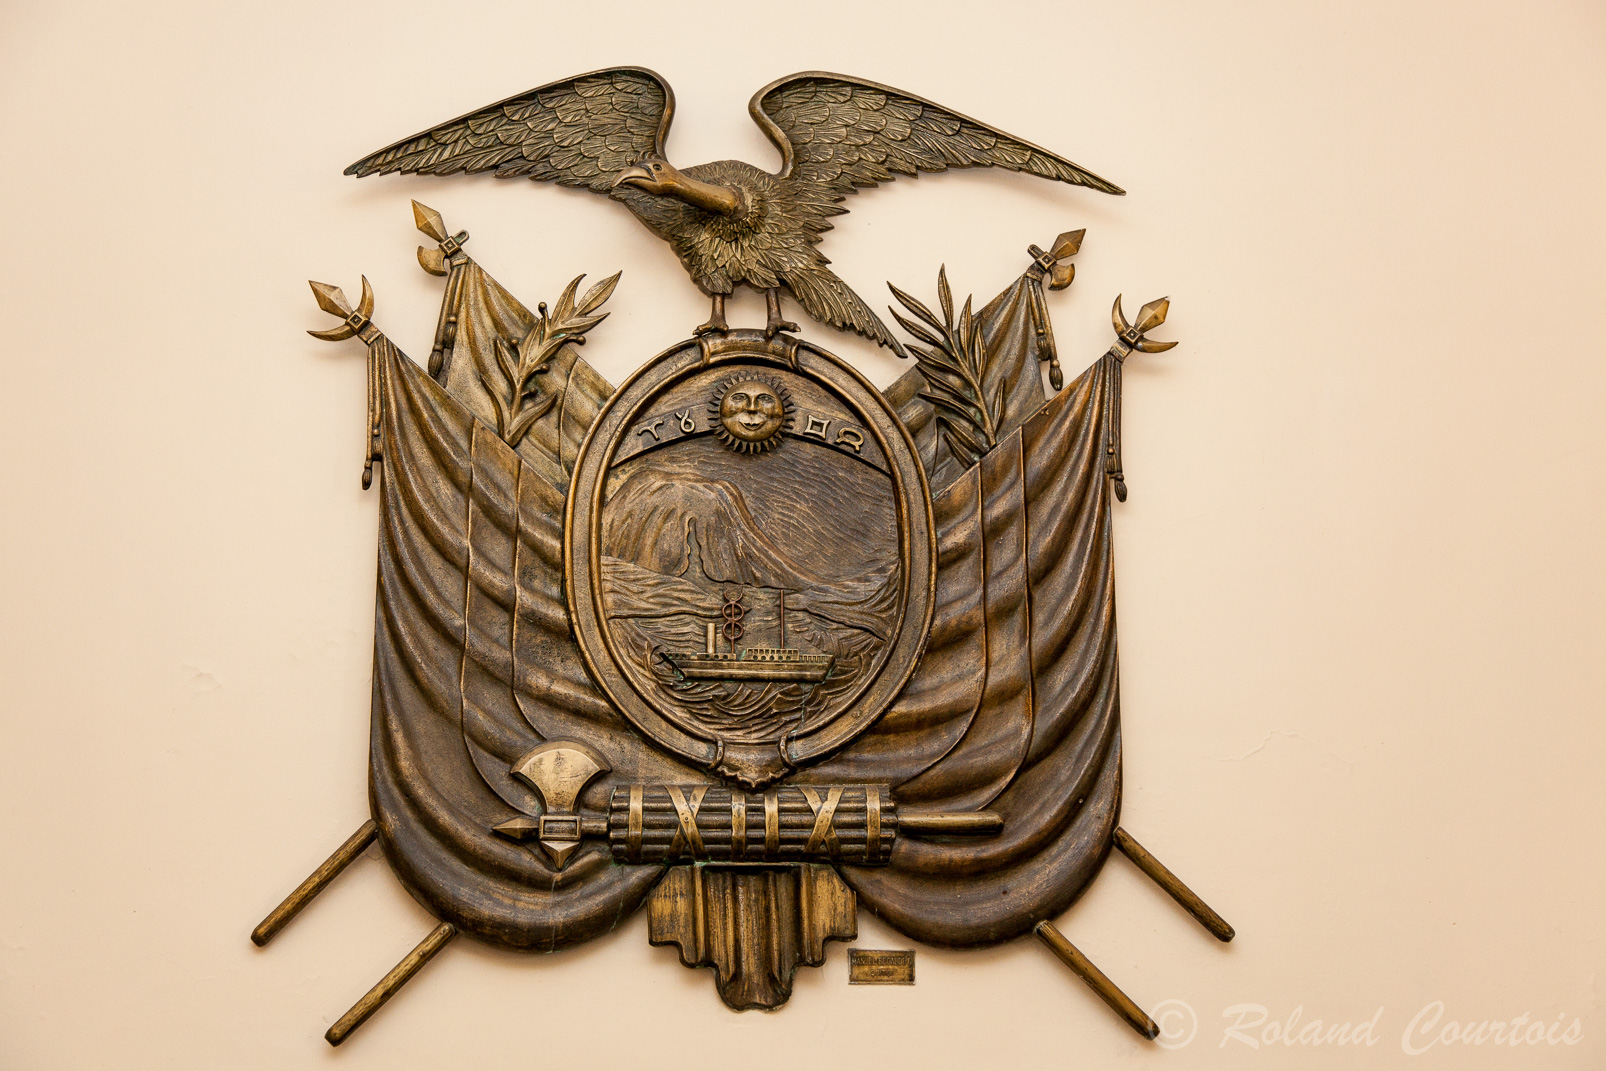 Belle plaque en bronze du blazon de l'Equateur. Le bateau à vapeur symbole de la navigation et du commerce représente aussi le premier bateau à vapeur construit sur la côte pacifique